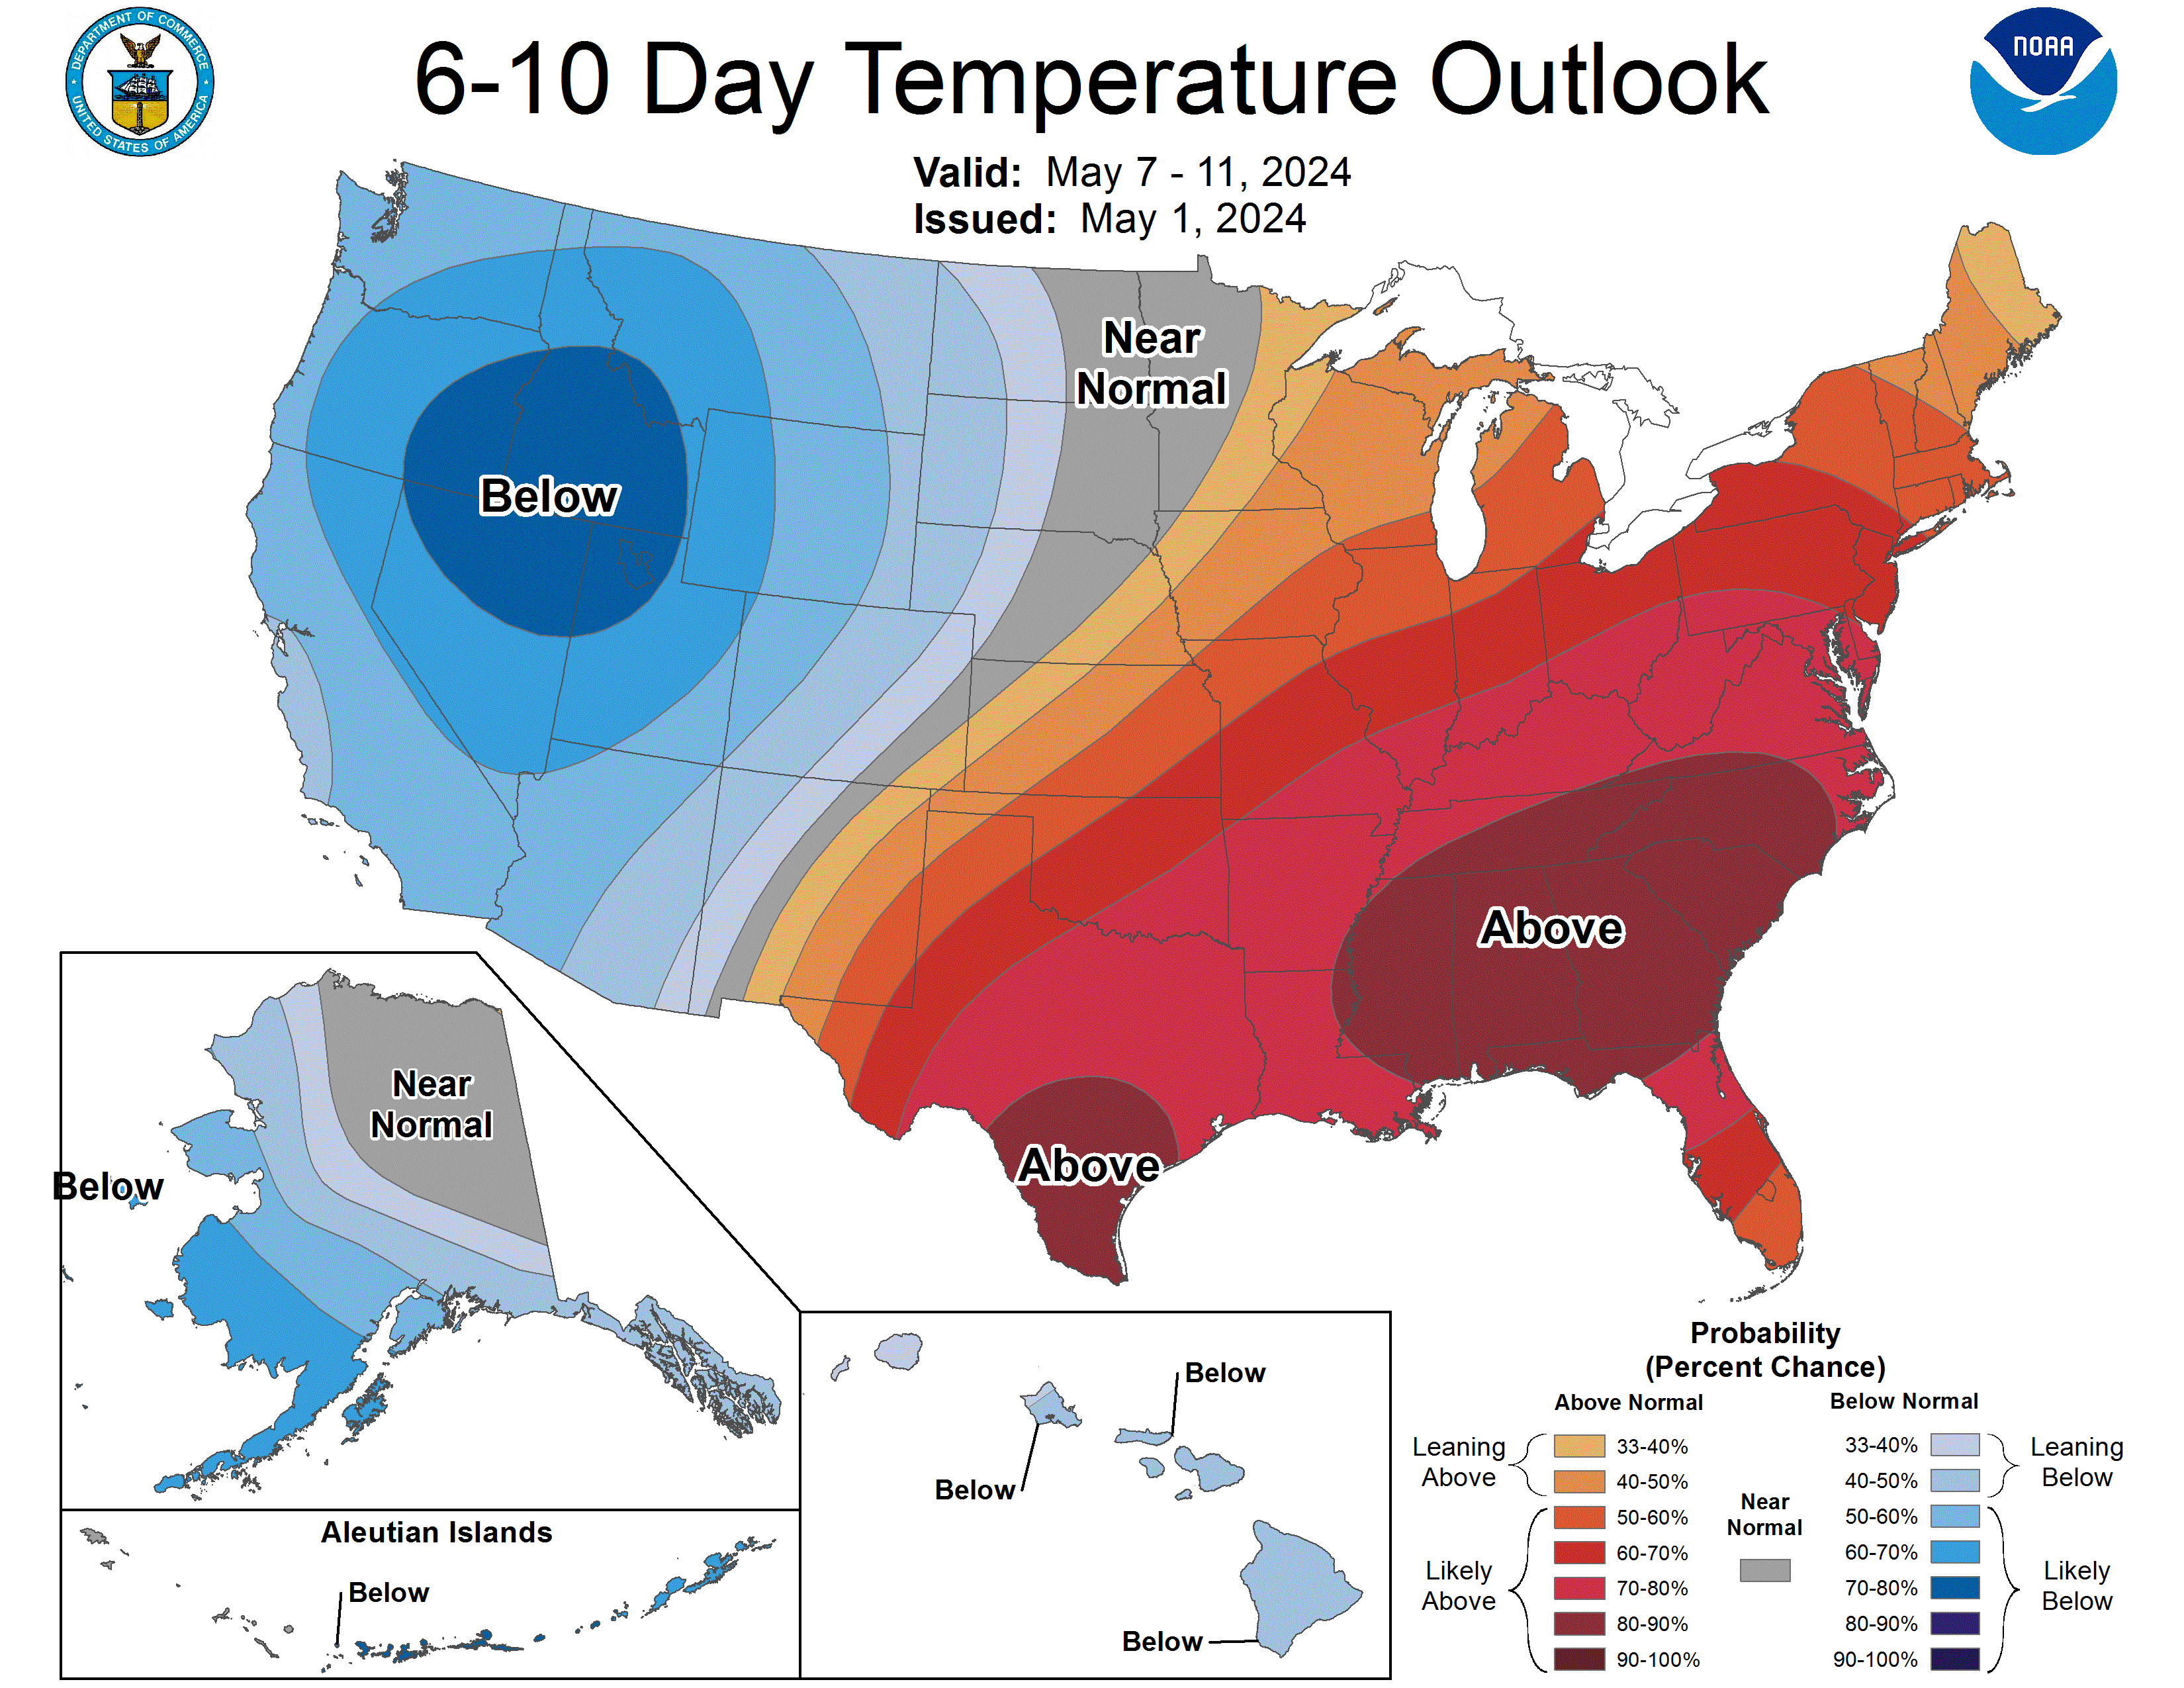 6 - 10 Day Forecast Temperature